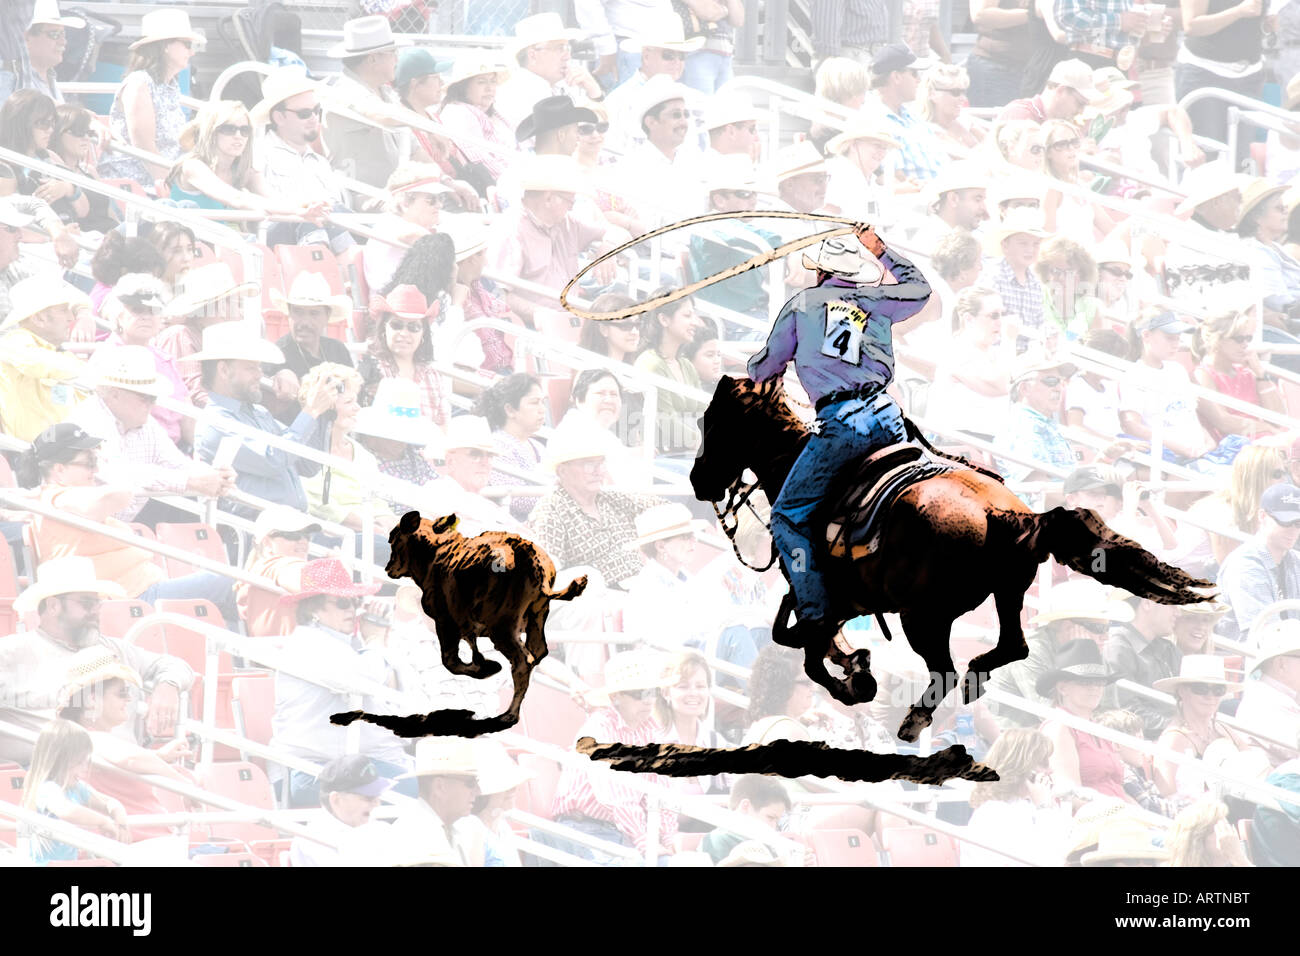 Konzept-Bild der Rodeo-Szene mit Ausschnitt des Cowboys Jagd nach Kalb mit Lasso vor Hintergrund der Menschenmenge in Cowboy-Hüte Stockfoto